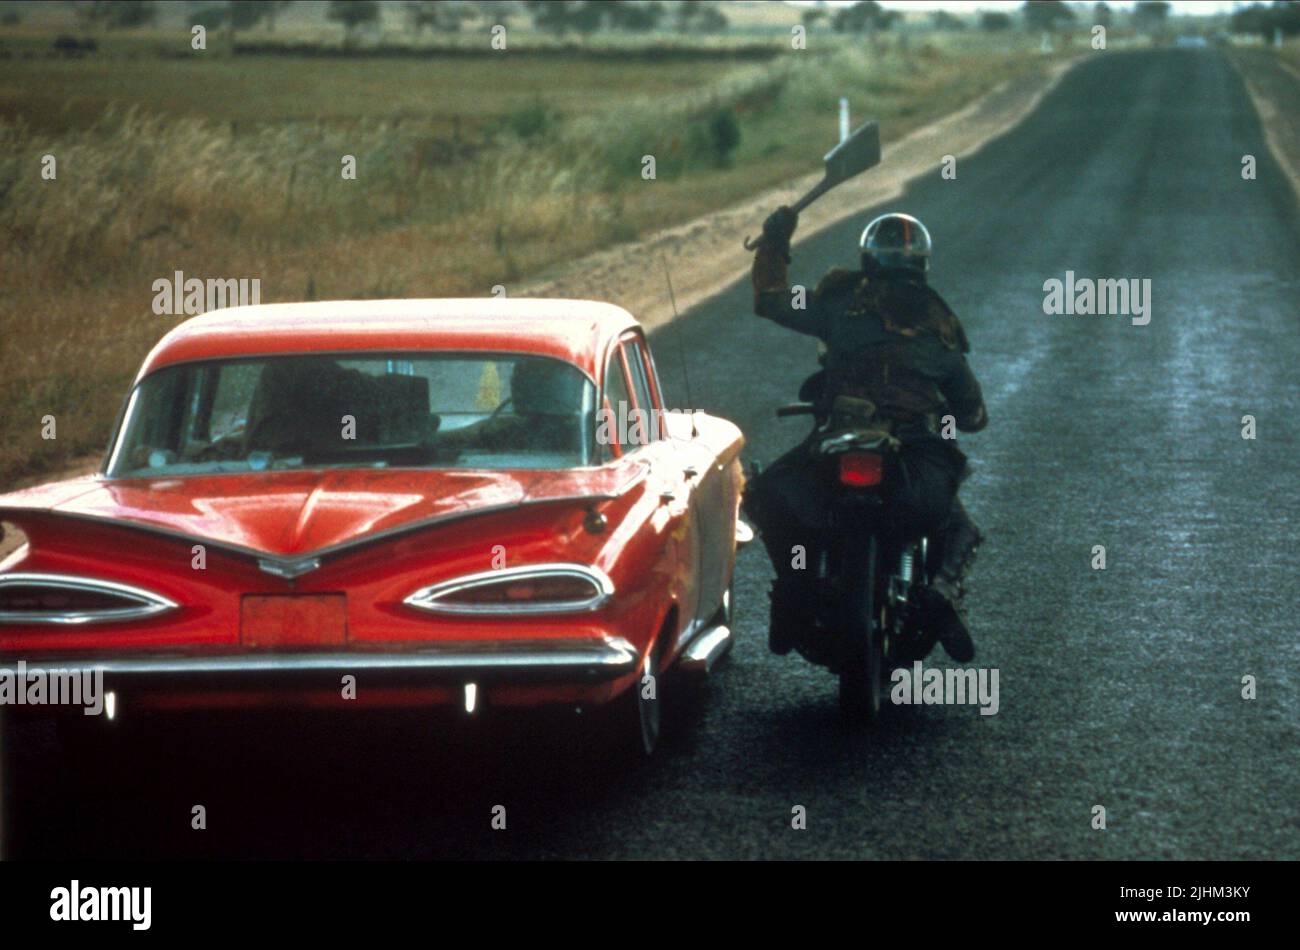 Mad max motorbike immagini e fotografie stock ad alta risoluzione - Alamy